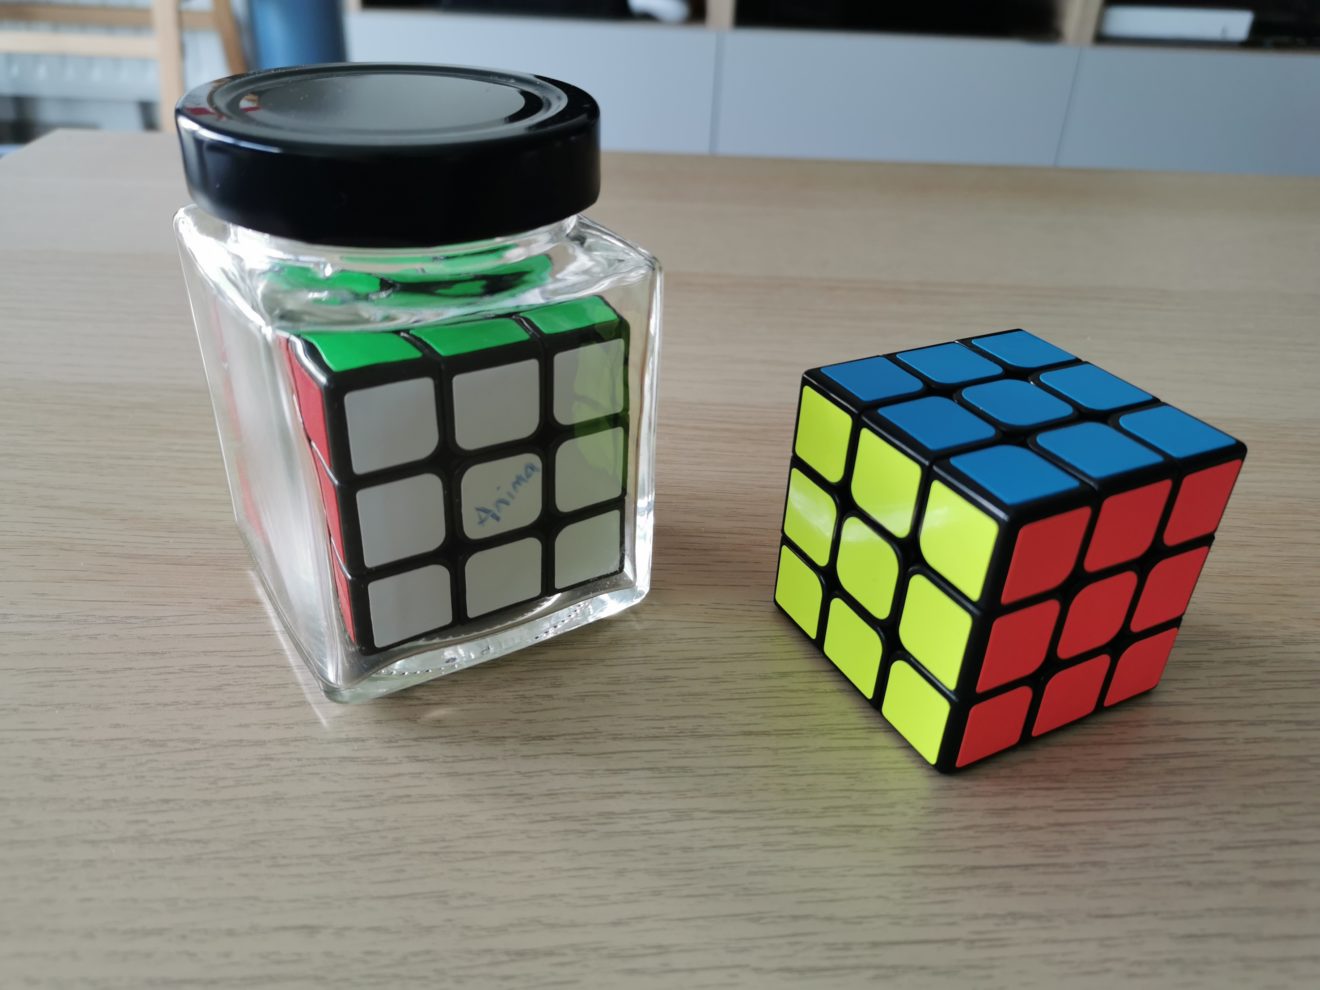 Cube signé dans bouteille + Rubick's cube Gimmick